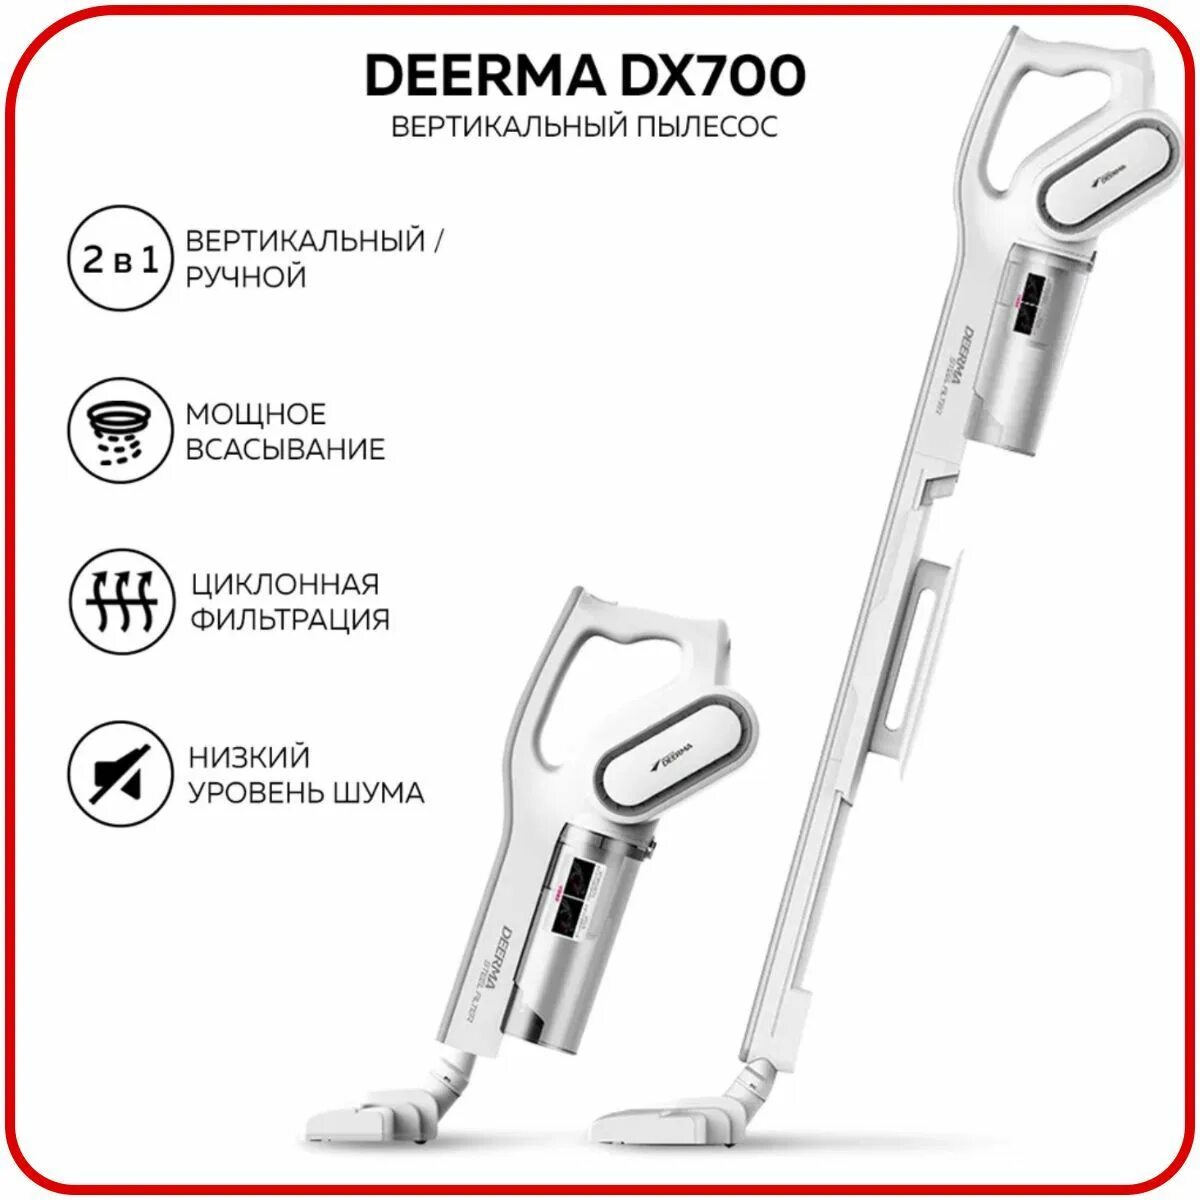 Пылесос Deerma dx700s. Ручной пылесос Xiaomi Deerma dx700s. Пылесос вертикальный Xiaomi Deerma dx700s. Вертикальный пылесос Xiaomi Deerma Vacuum Cleaner (dx700s). Dx700 pro купить